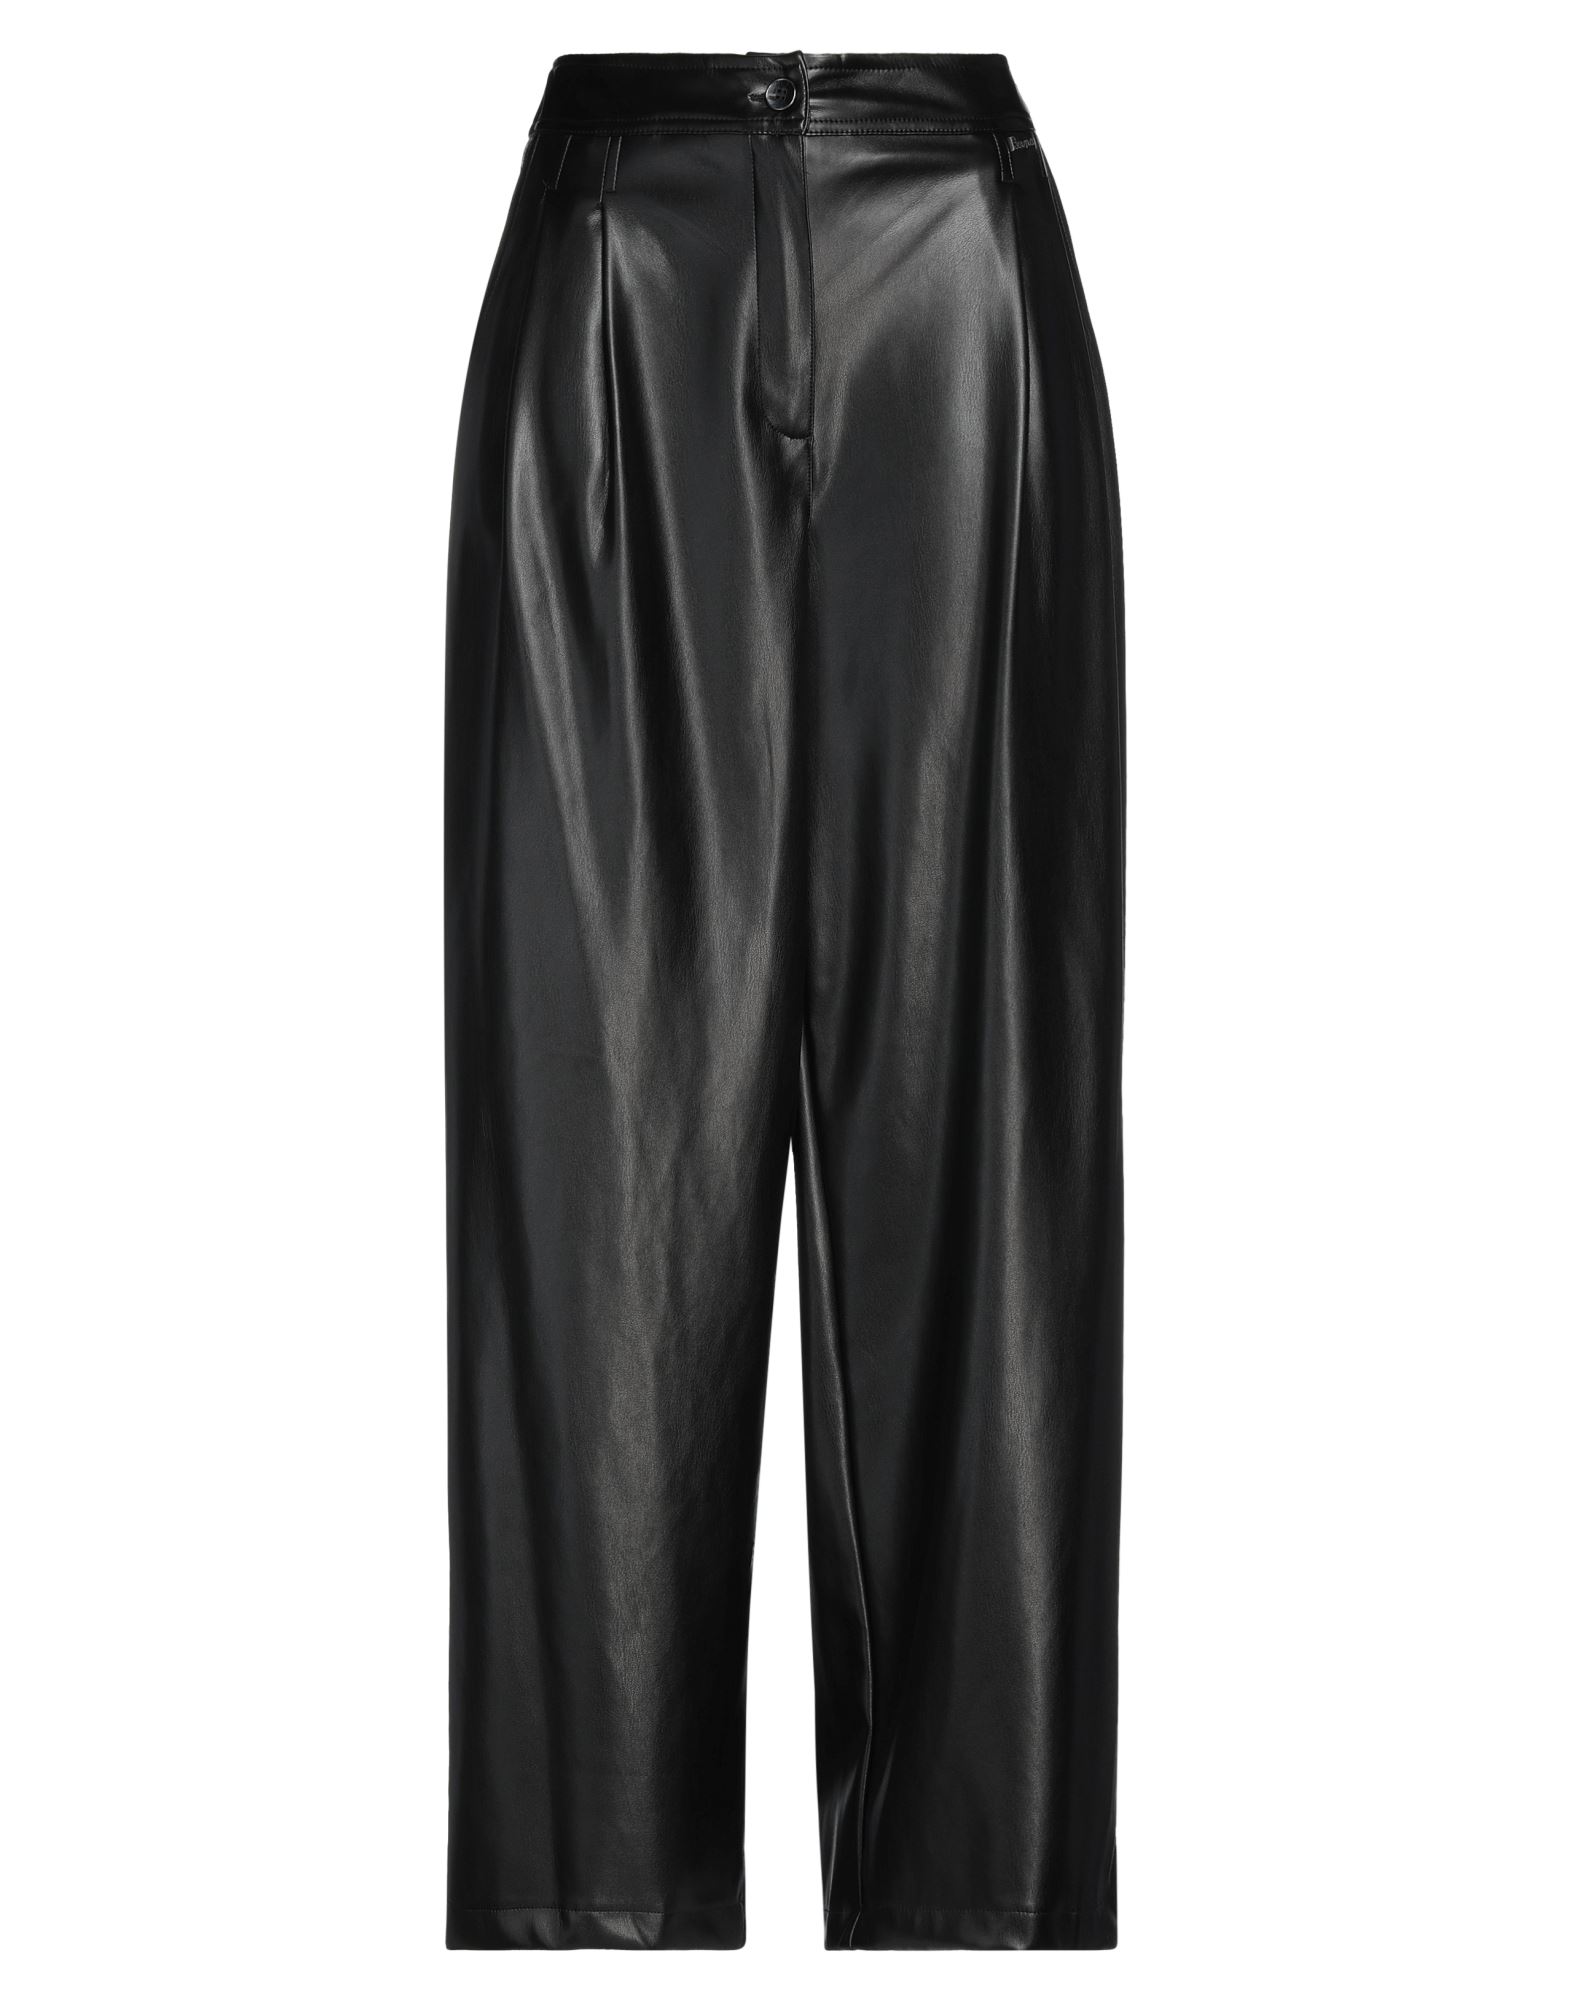 Shop Berna Woman Pants Black Size 10 Polyester, Polyurethane